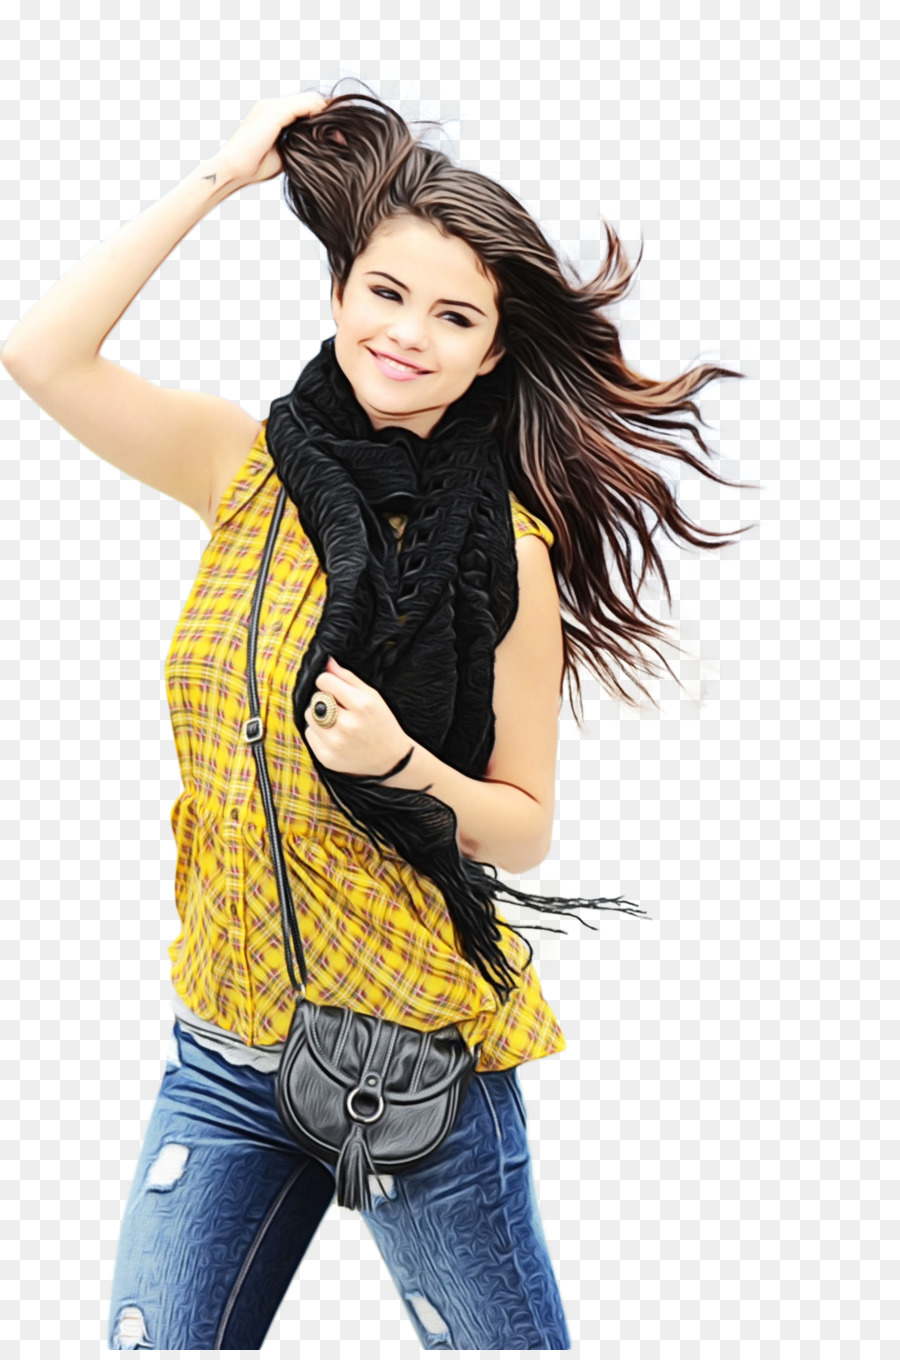 Selena Gomez Portable Network Graphics Clip art Immagine Servizio fotografico - 